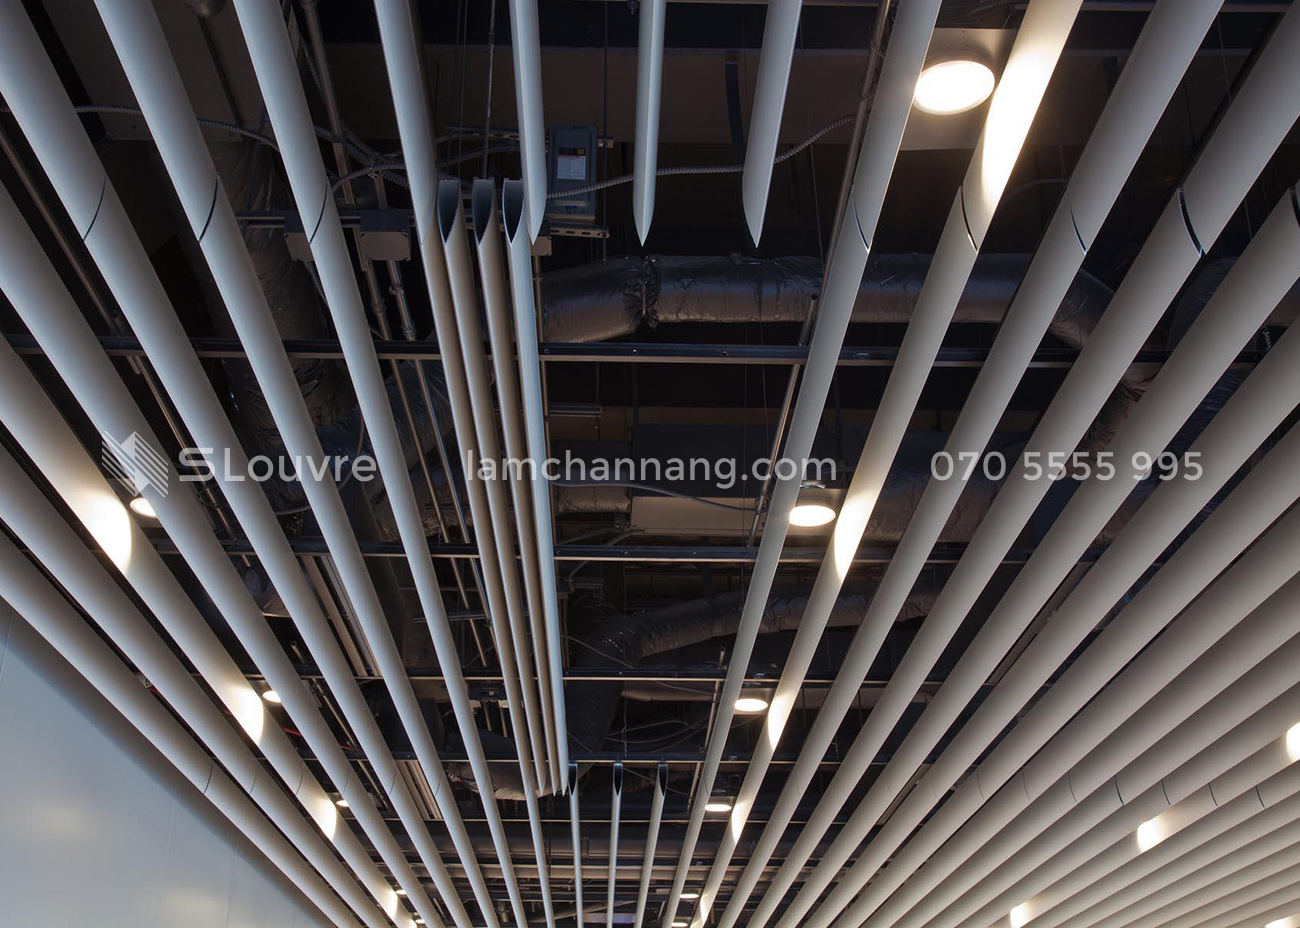 trần nhôm, lam nhôm, trần lam nhôm, trần nhà làm bằng lam nhôm, aluminium louvre, aluminium ceiling, interior aluminium ceiling, interior louvre, aluminium louvre ceiling